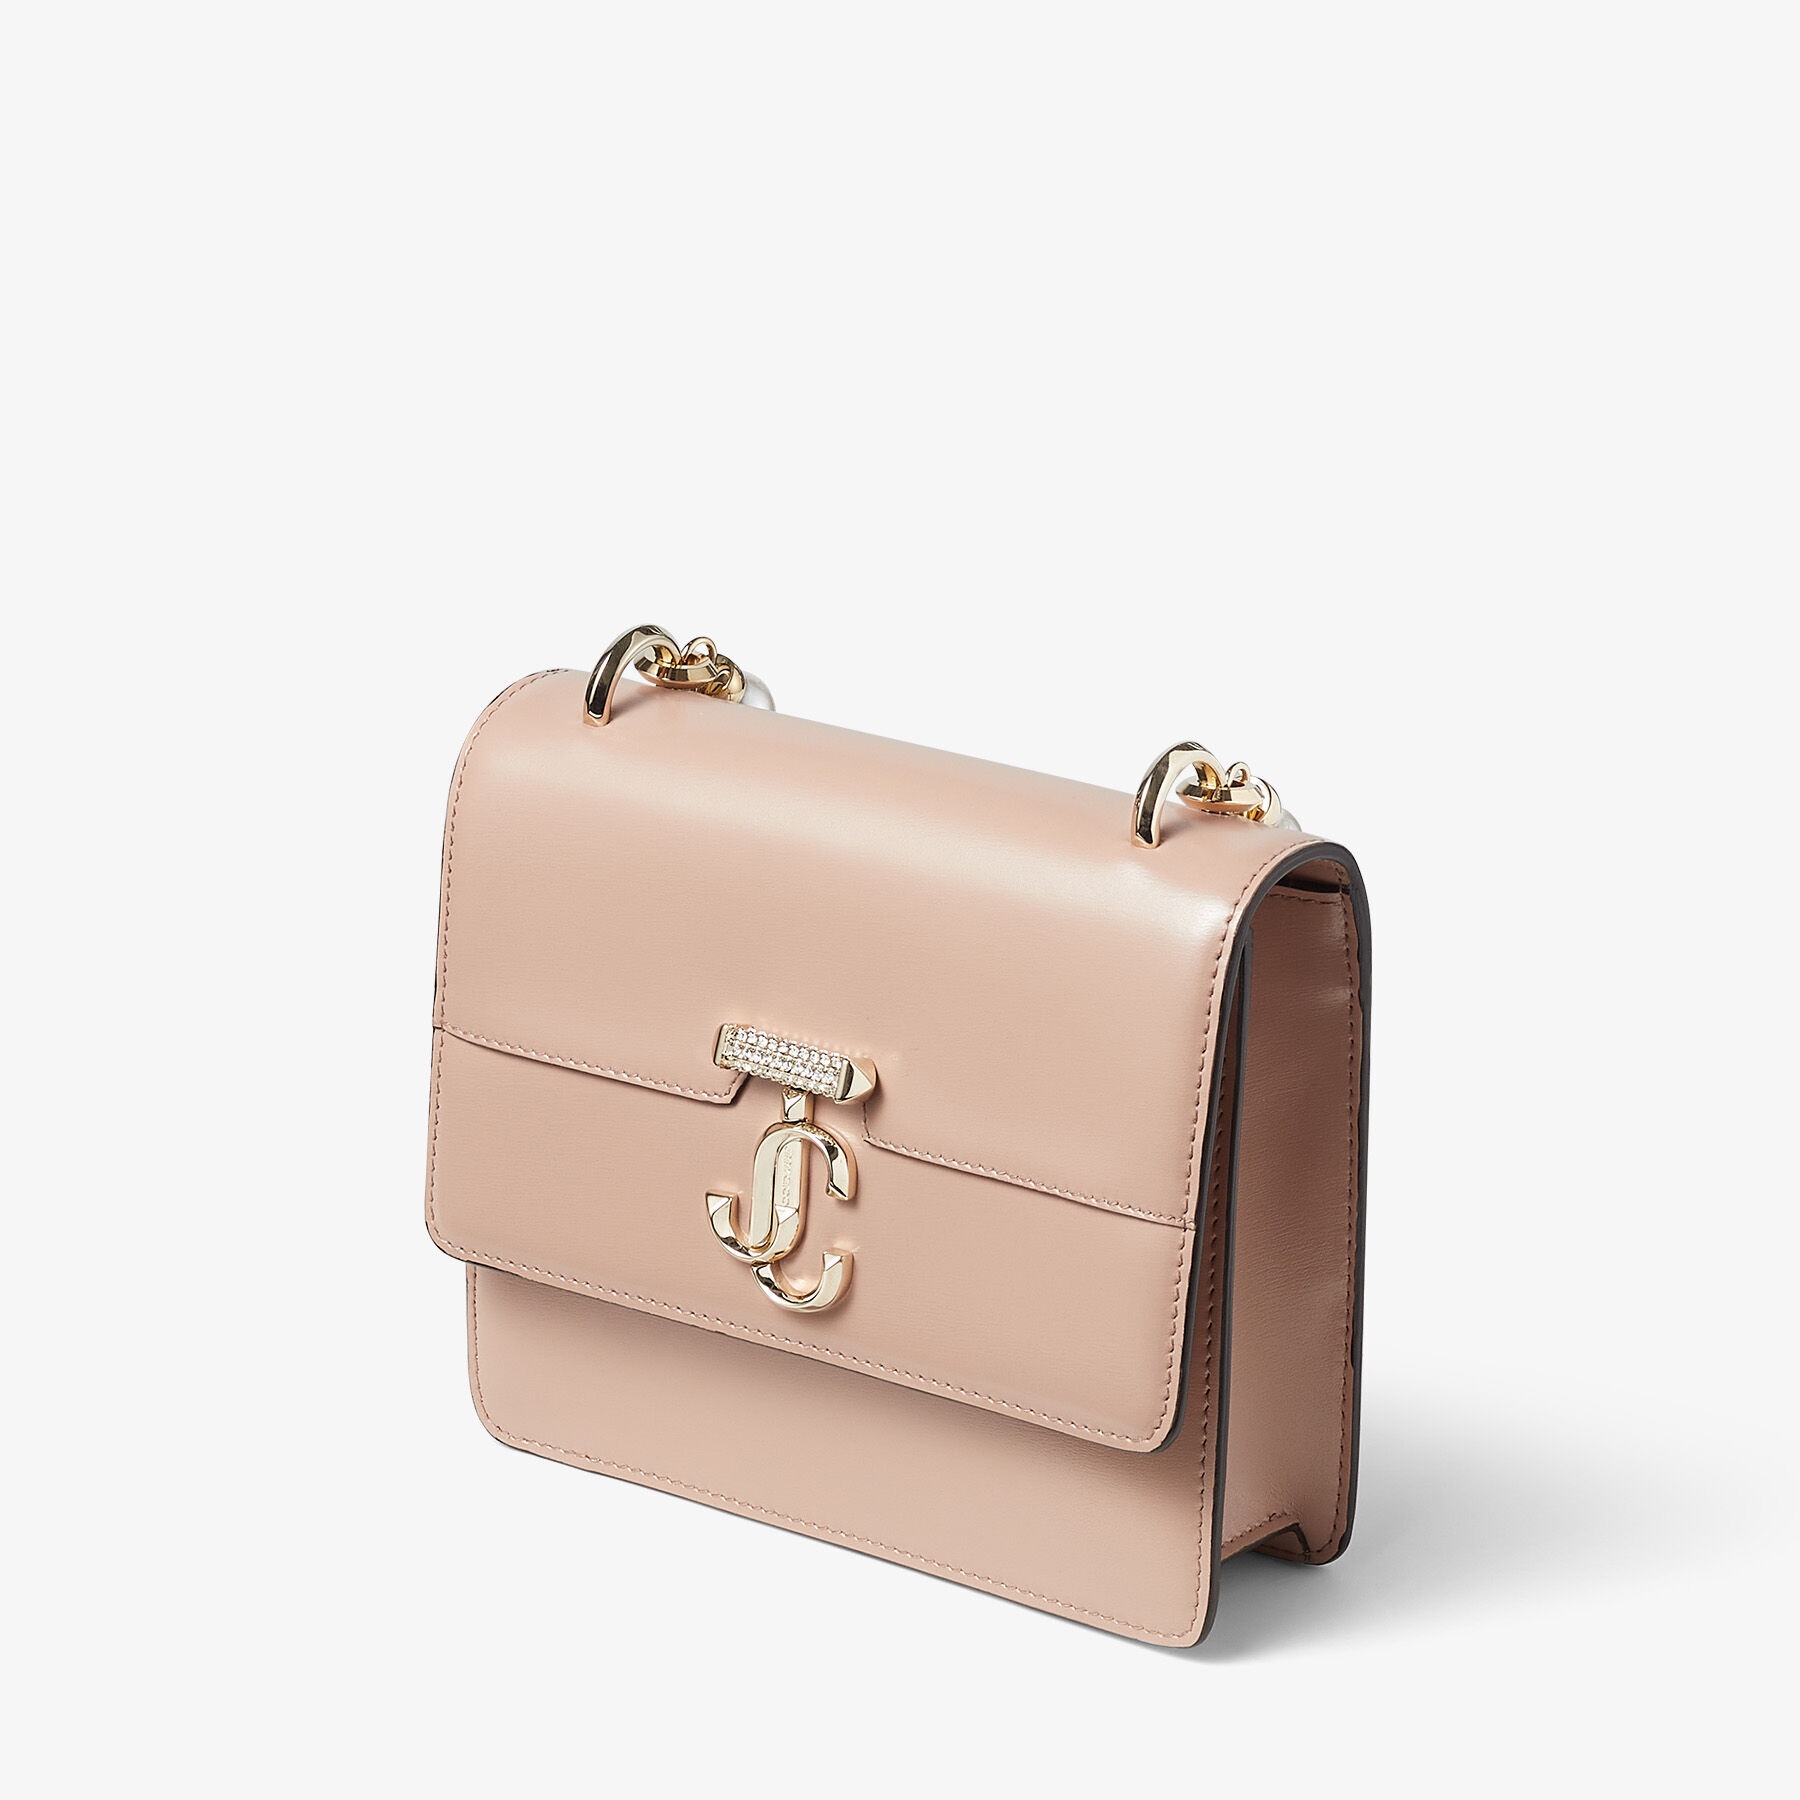 Varenne Quad XS
Ballet Pink Box Leather Shoulder Bag with Pearl Strap - 4